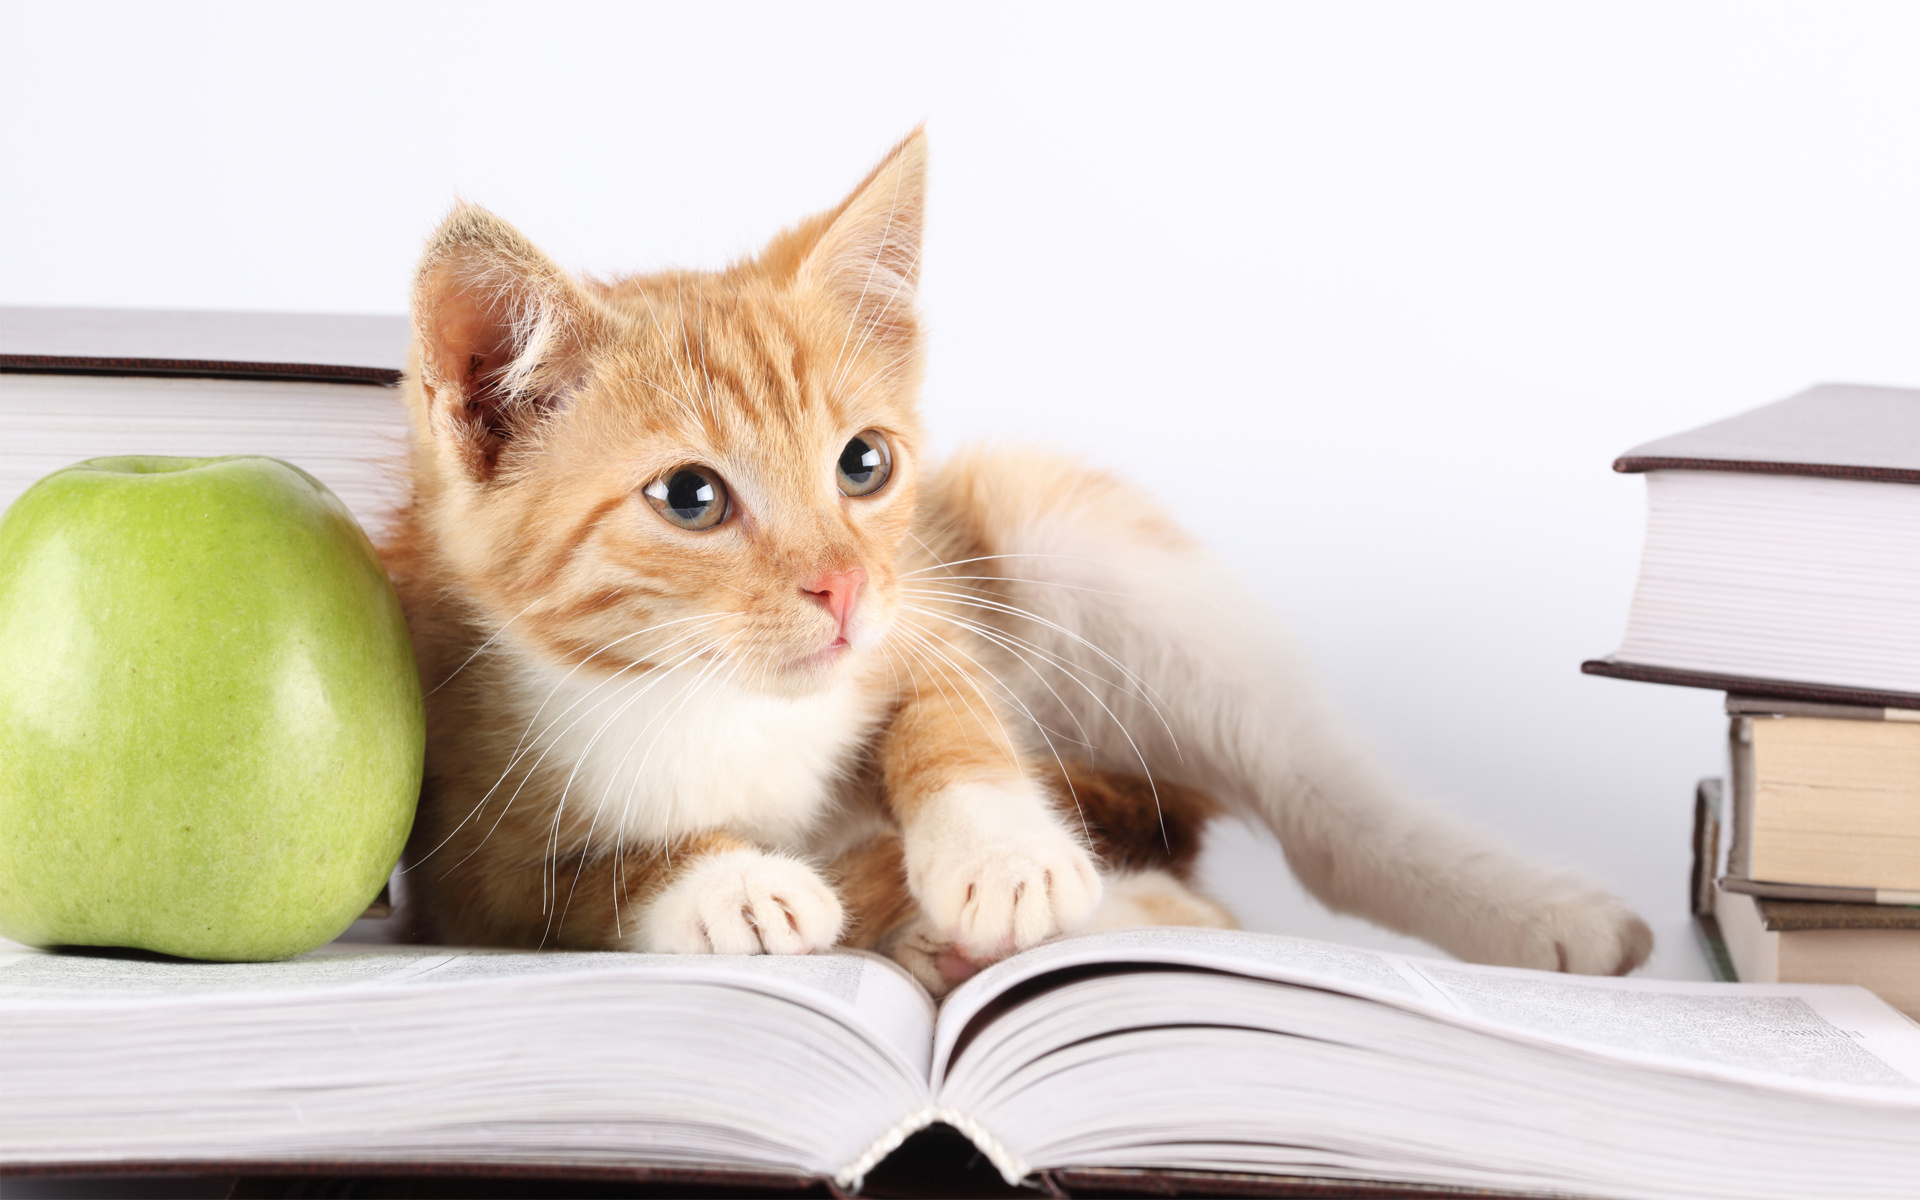 Descarga gratuita de fondo de pantalla para móvil de Gatito, Manzana, Libro, Gato, Gatos, Animales.